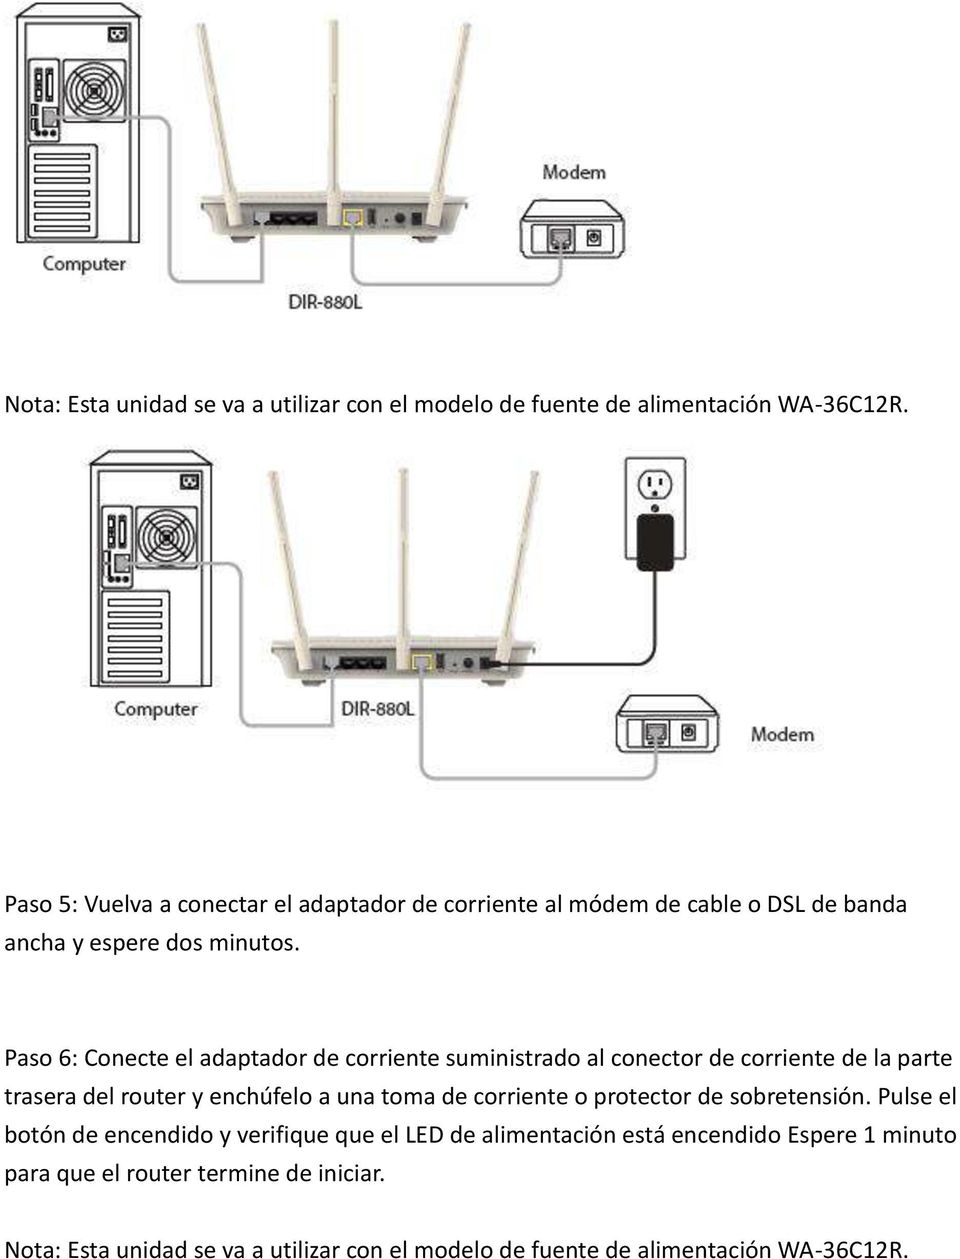 Paso 6: Conecte el adaptador de corriente suministrado al conector de corriente de la parte trasera del router y enchúfelo a una toma de corriente o